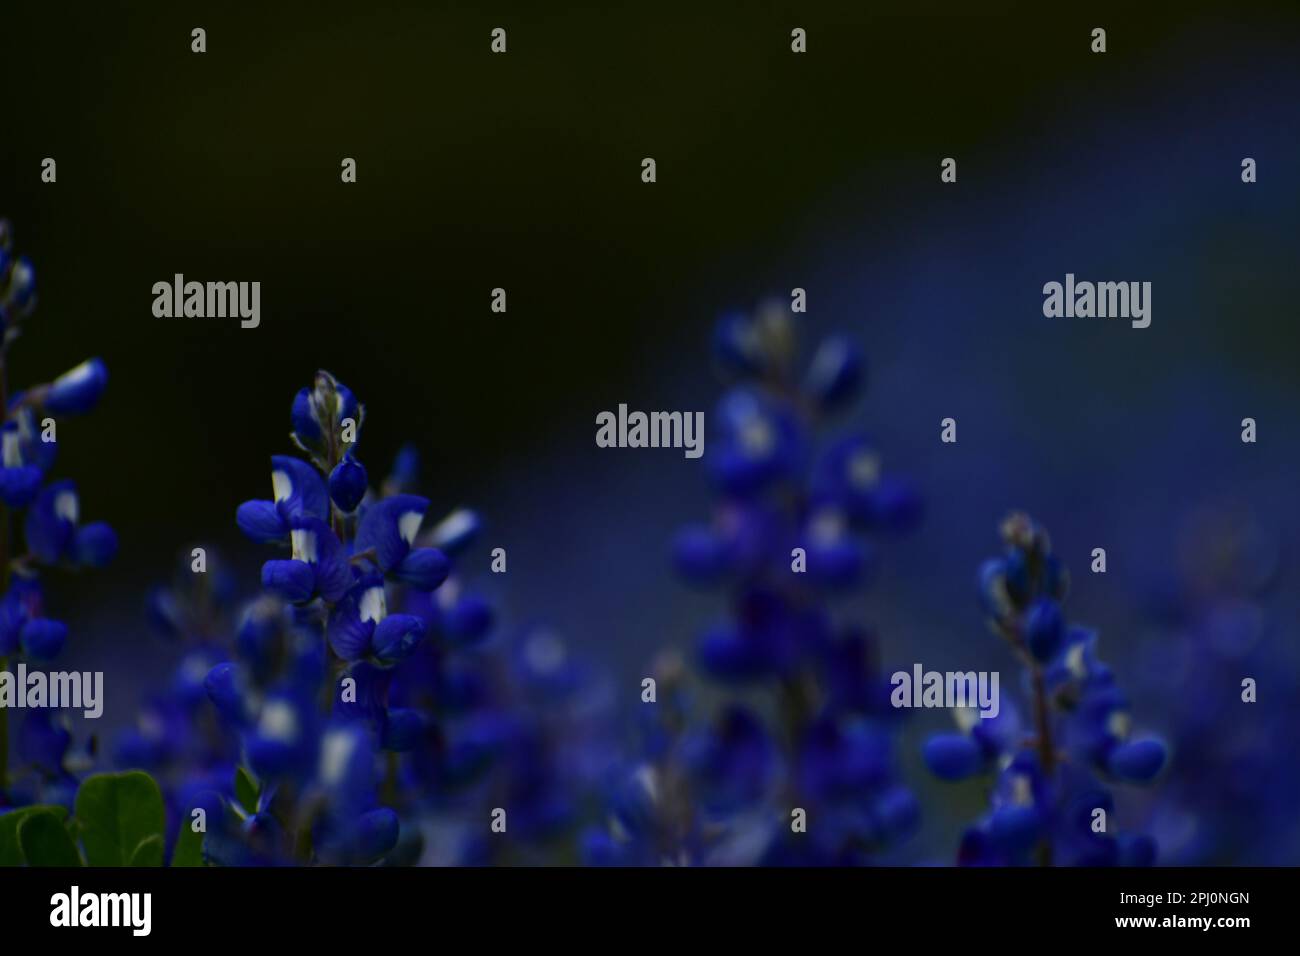 Regola dei terzi con fioriture del cofano blu primavera Foto Stock